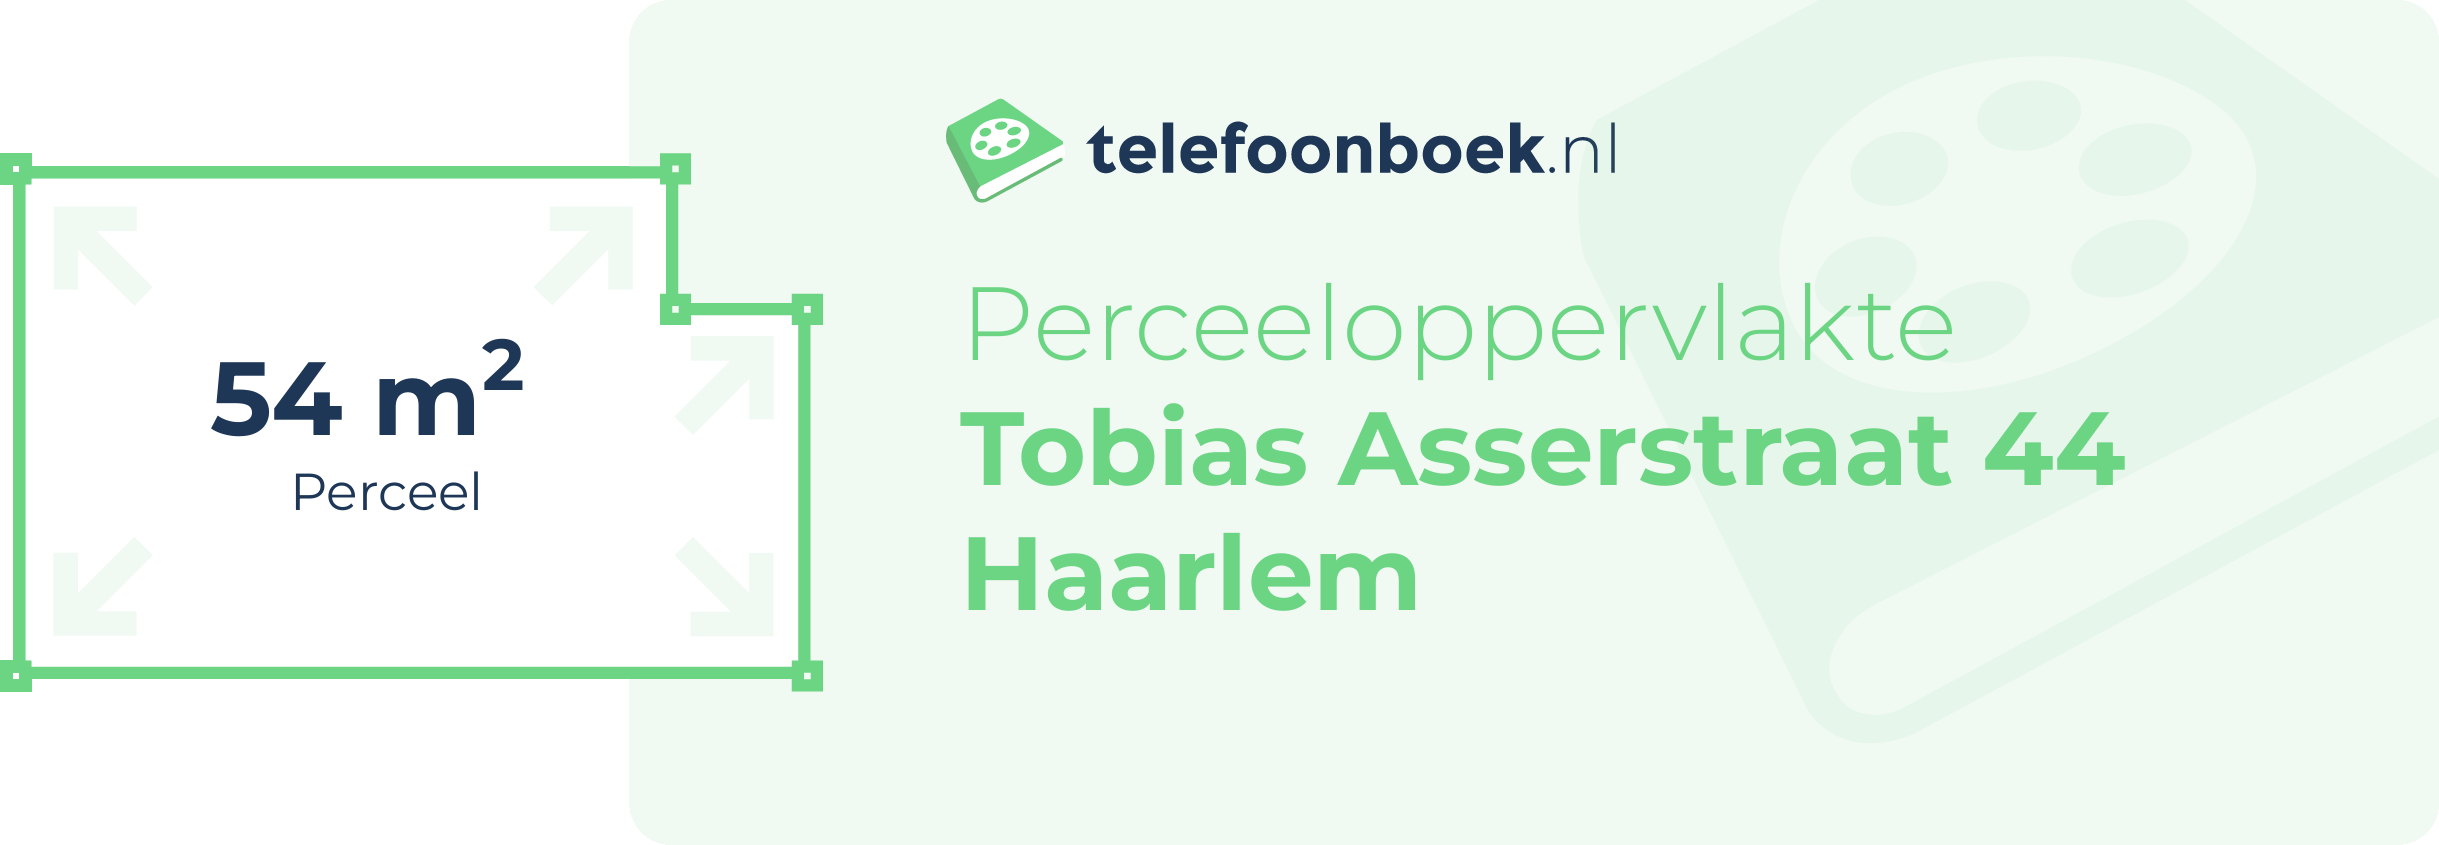 Perceeloppervlakte Tobias Asserstraat 44 Haarlem